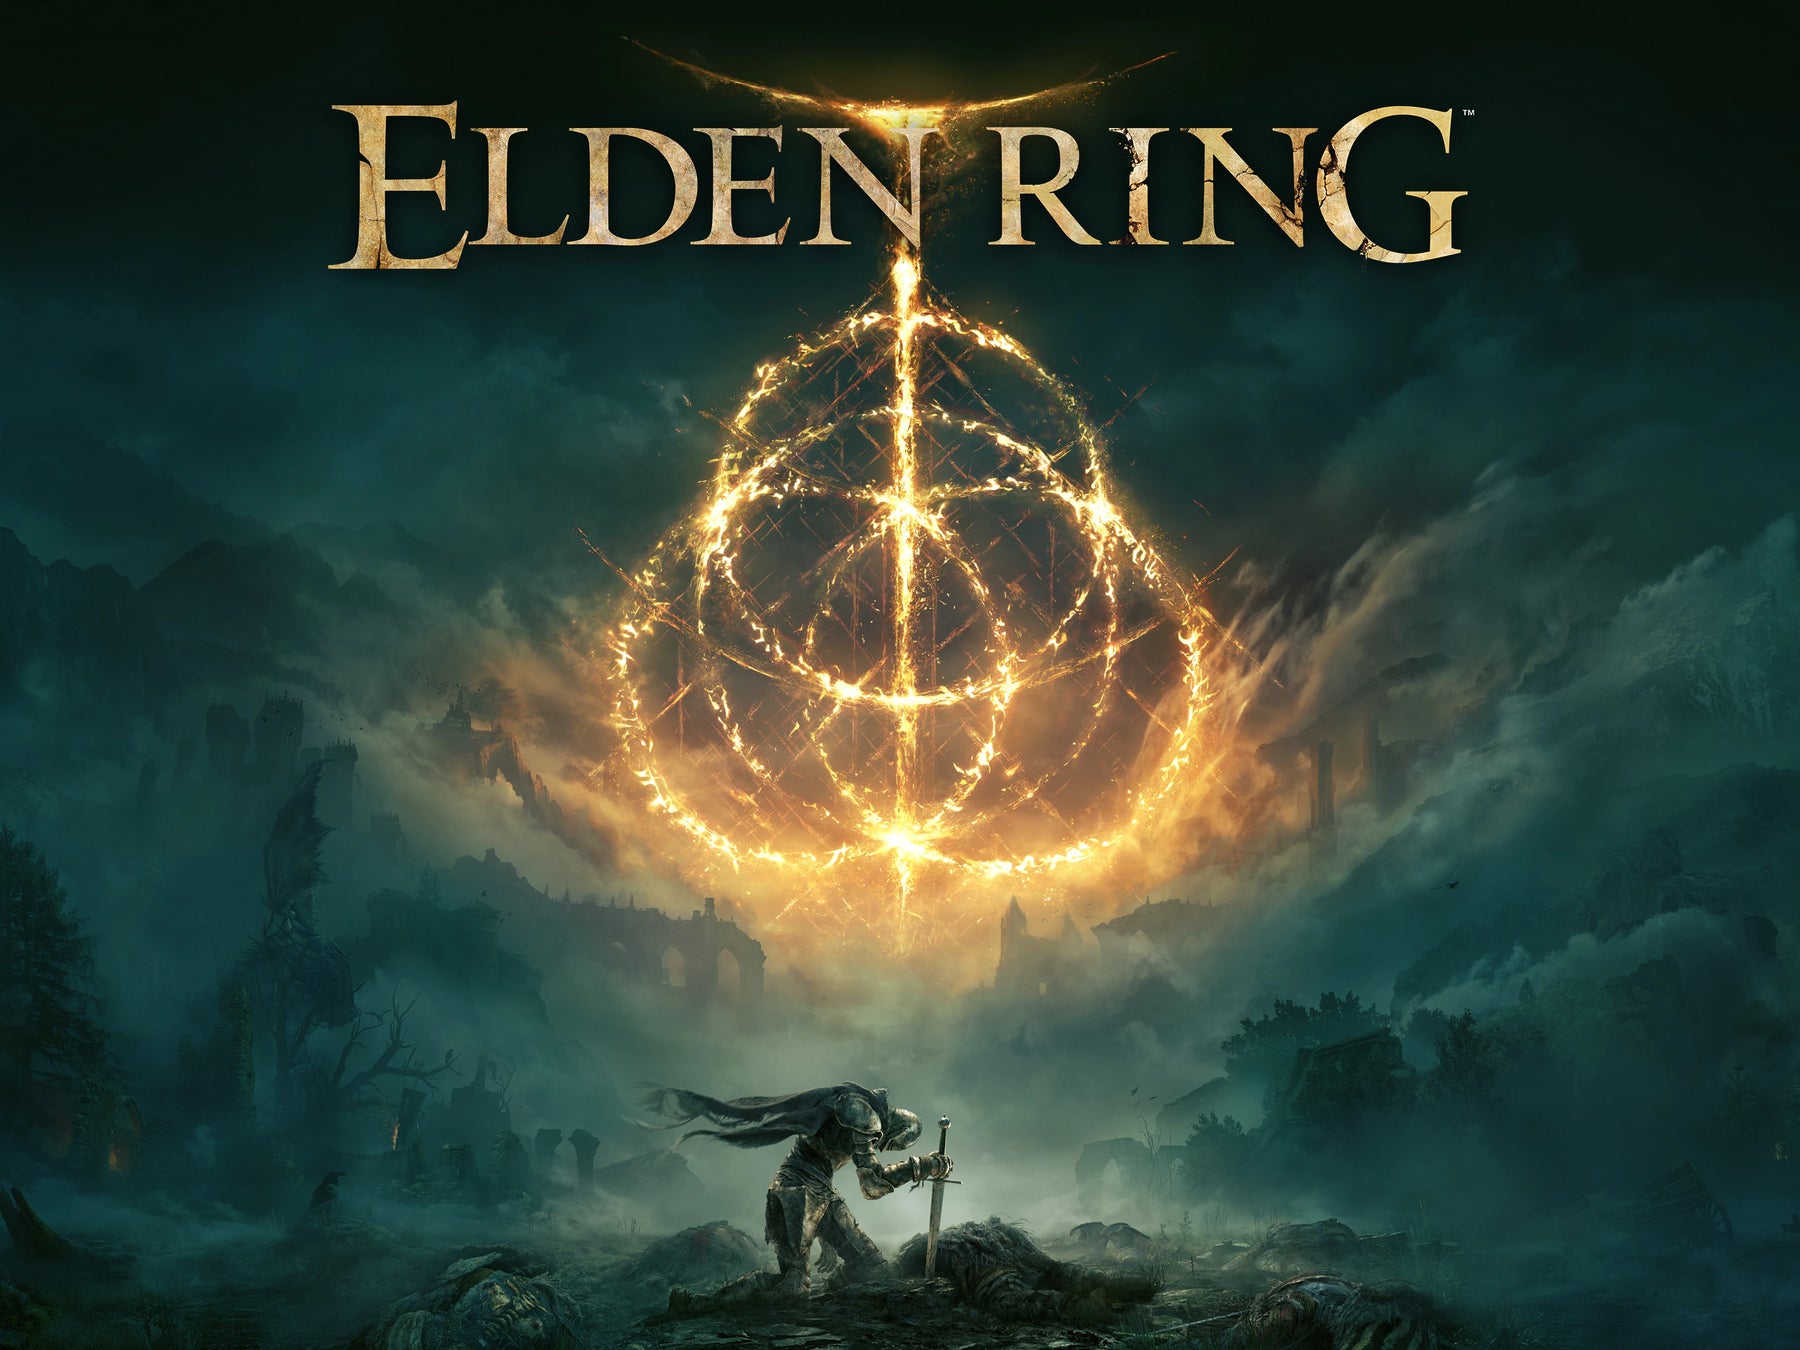 ¡El rey de los Souls! ELDEN RING fue visto más de 200 millones de horas en Stream